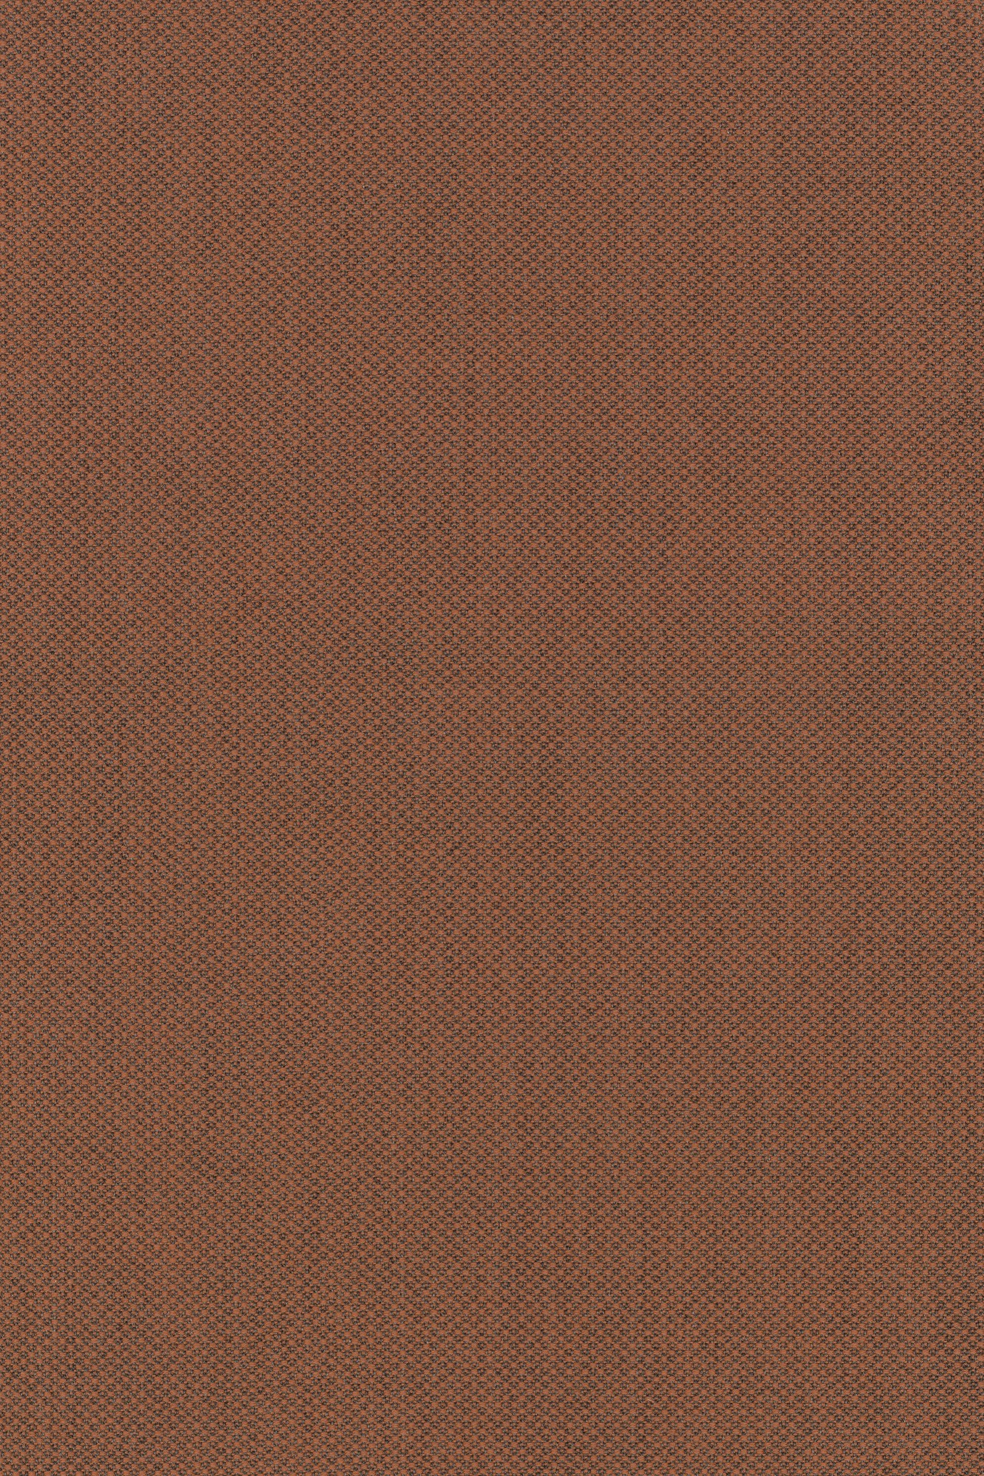 Fabric sample Fiord orange